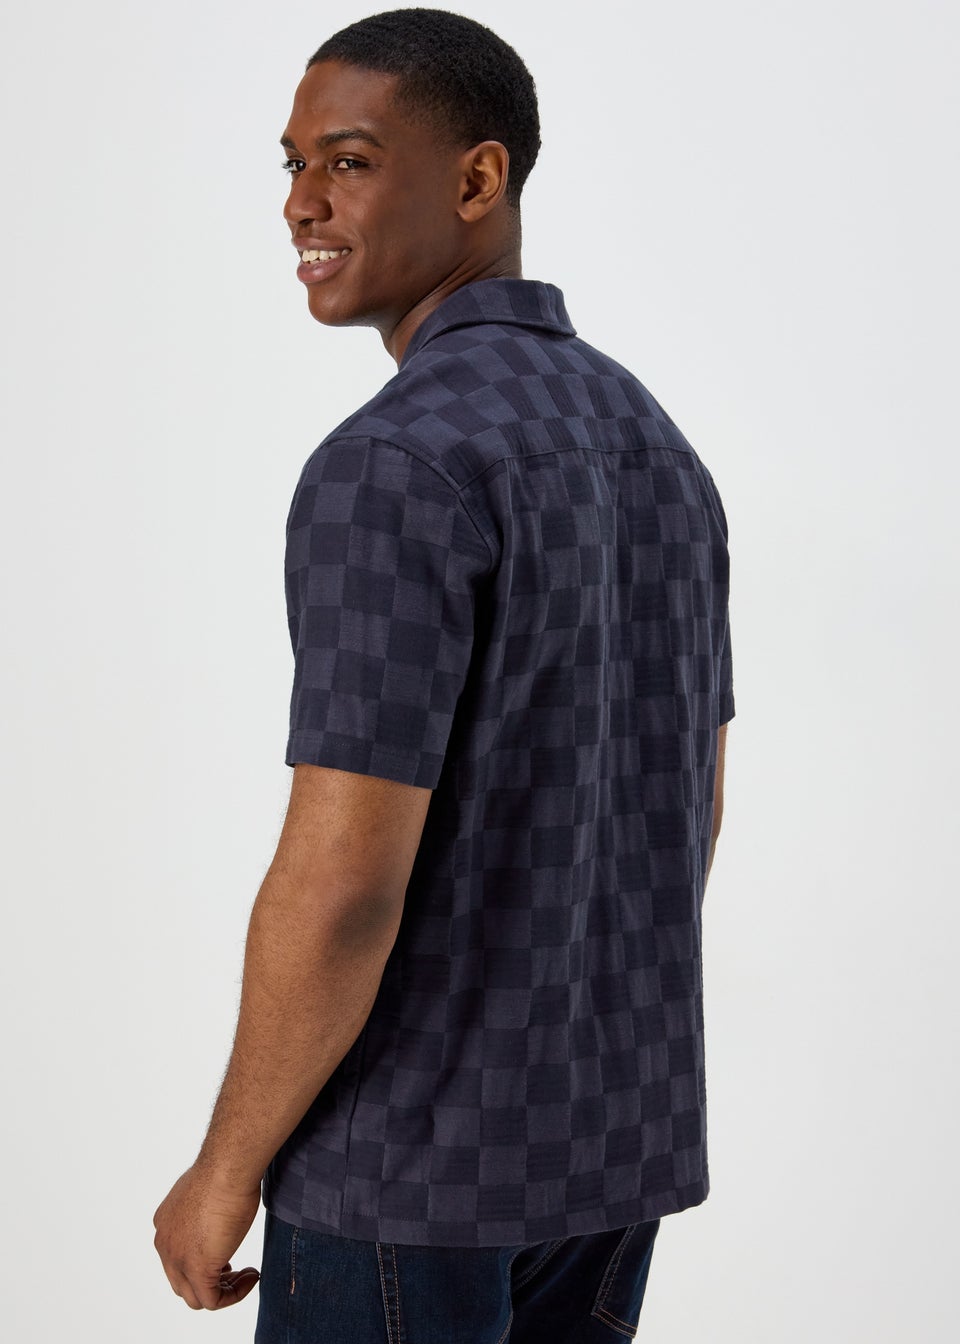 Blue Checkboard Texture Short Sleeves Shirt